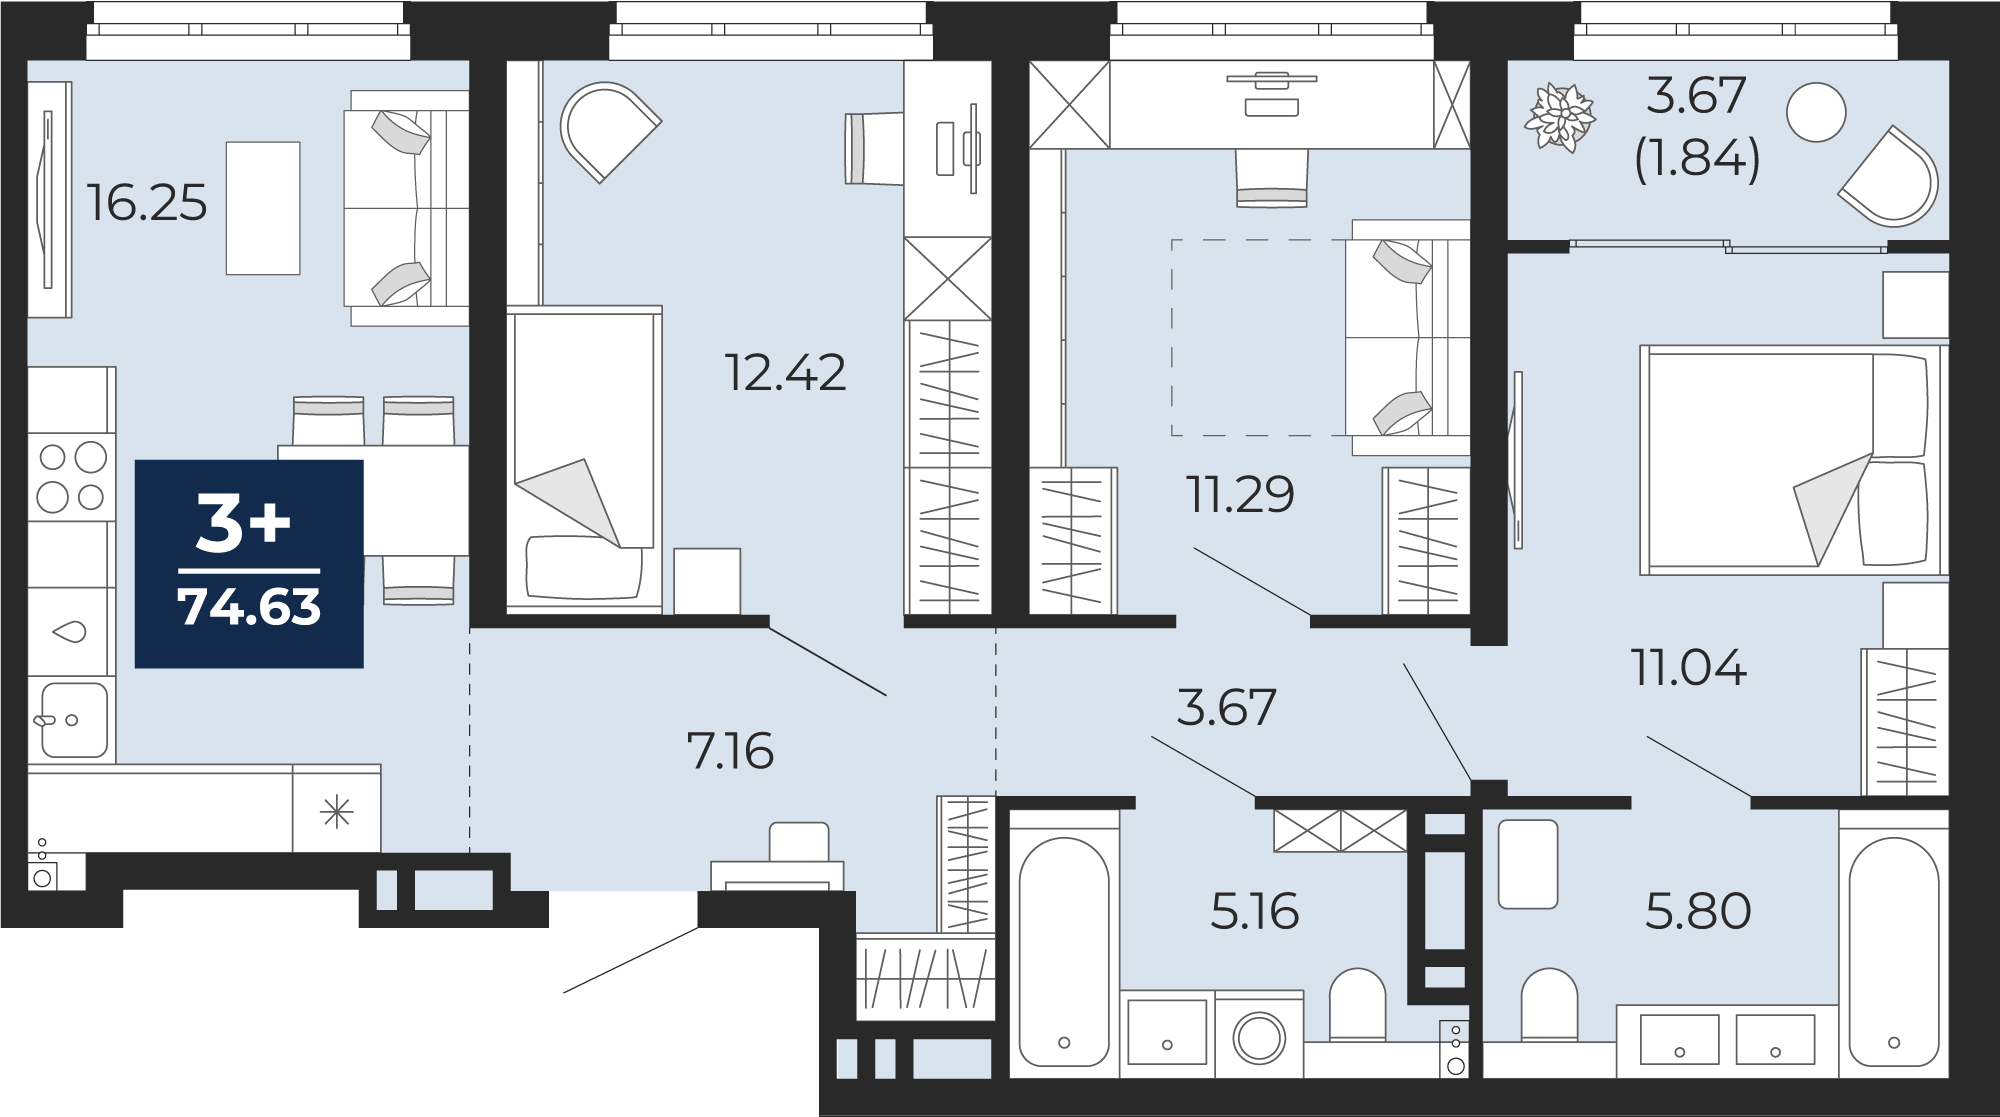 Квартира № 280, 3-комнатная, 74.63 кв. м, 12 этаж